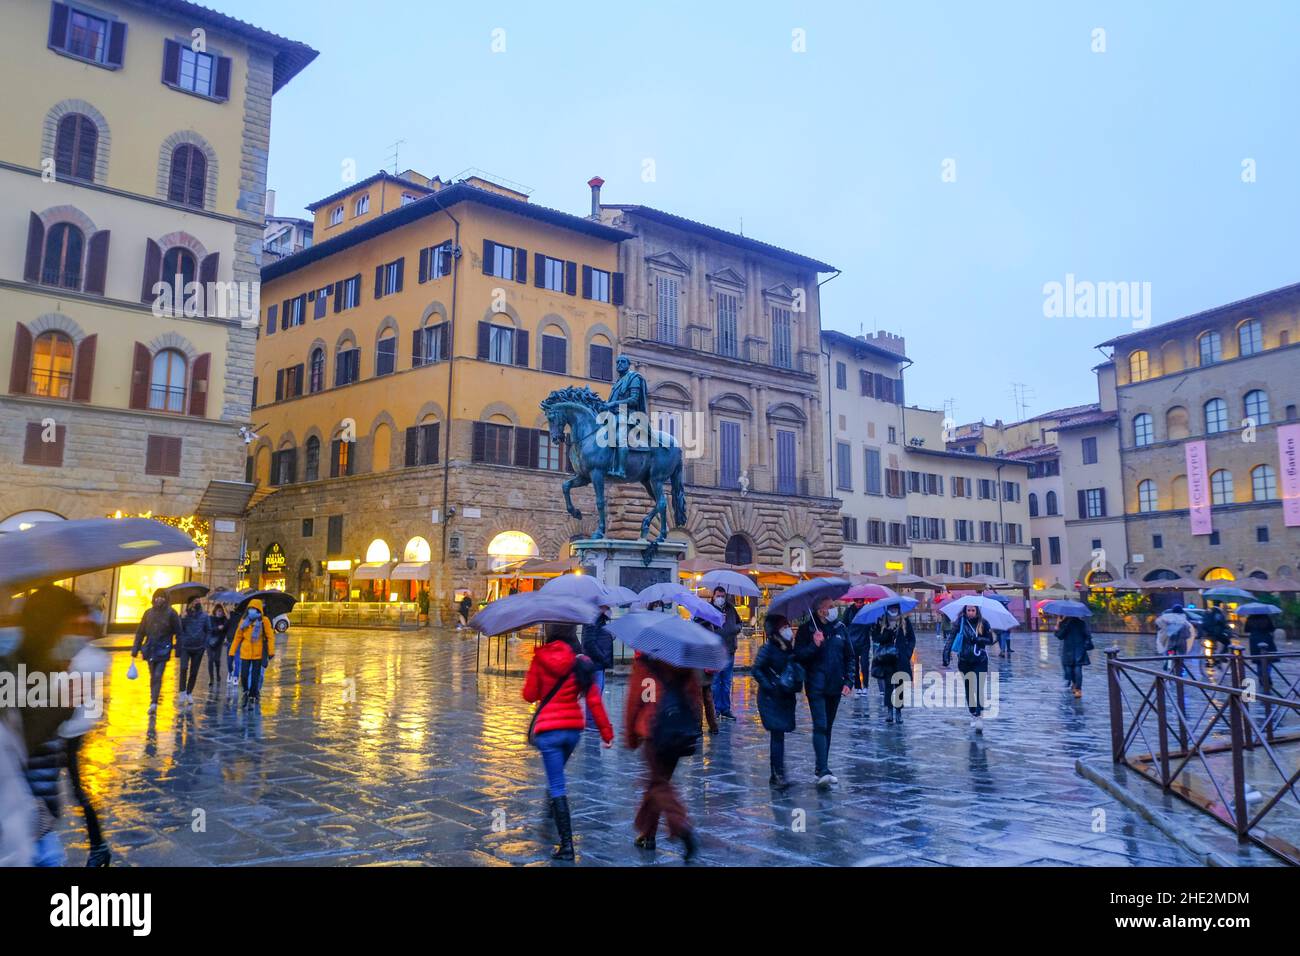 2021 décembre Florence, Italie : le monument équestre de la statue de Cosimo sur la place, piazza della Signoria.Touristes marchant avec des parasols dans le Banque D'Images